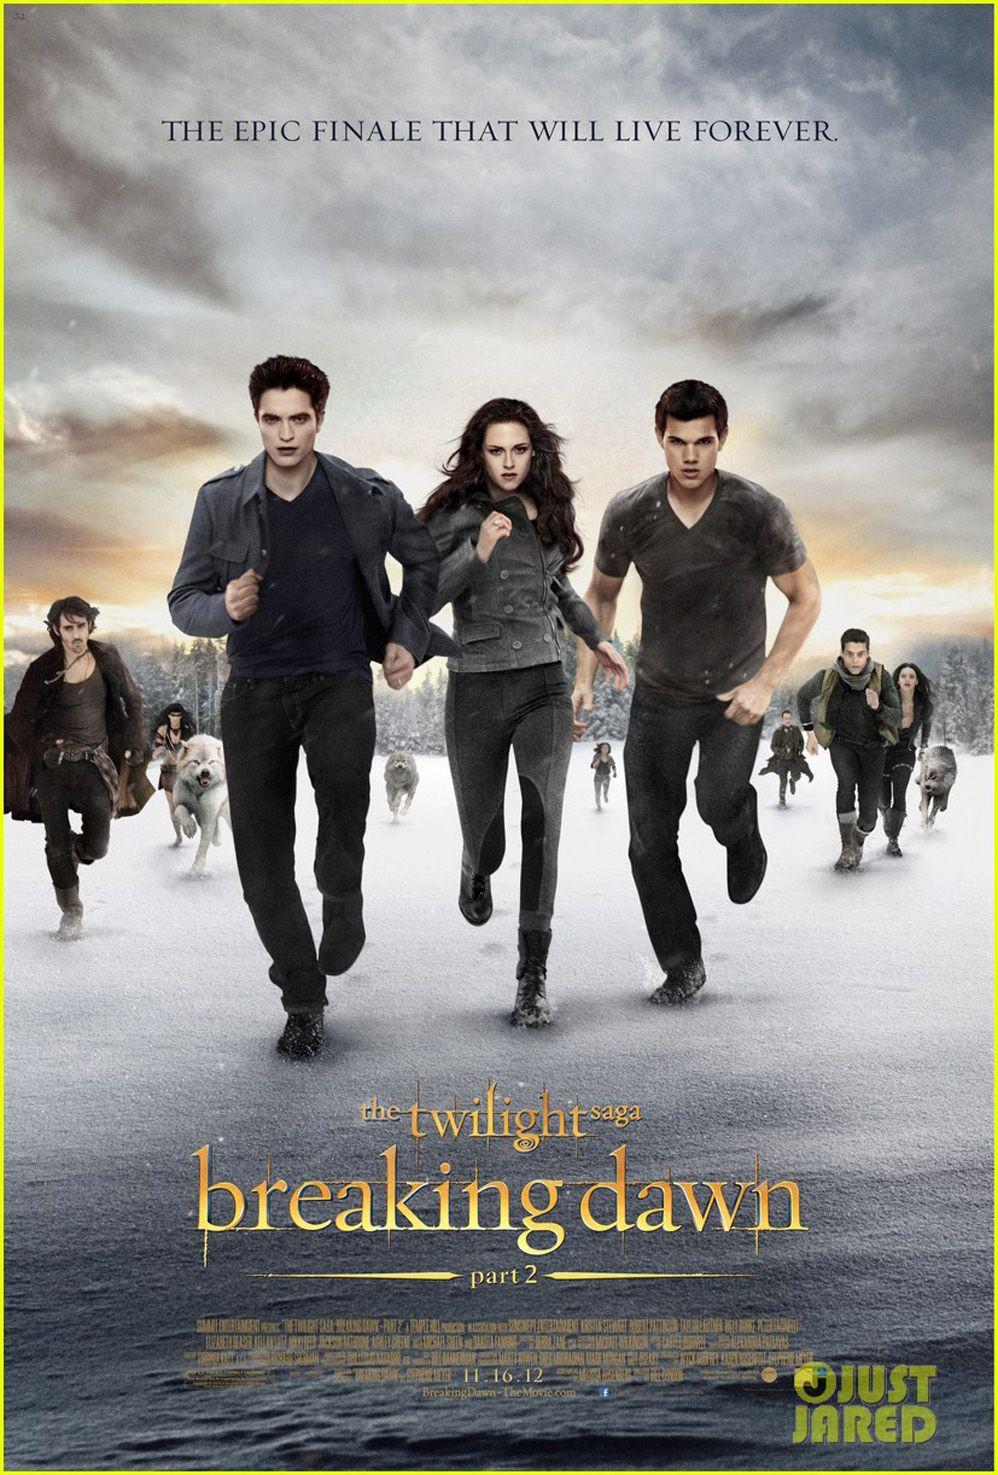 Gallery-, The Twilight Saga: Breaking Dawn 2 HD Wallpaper